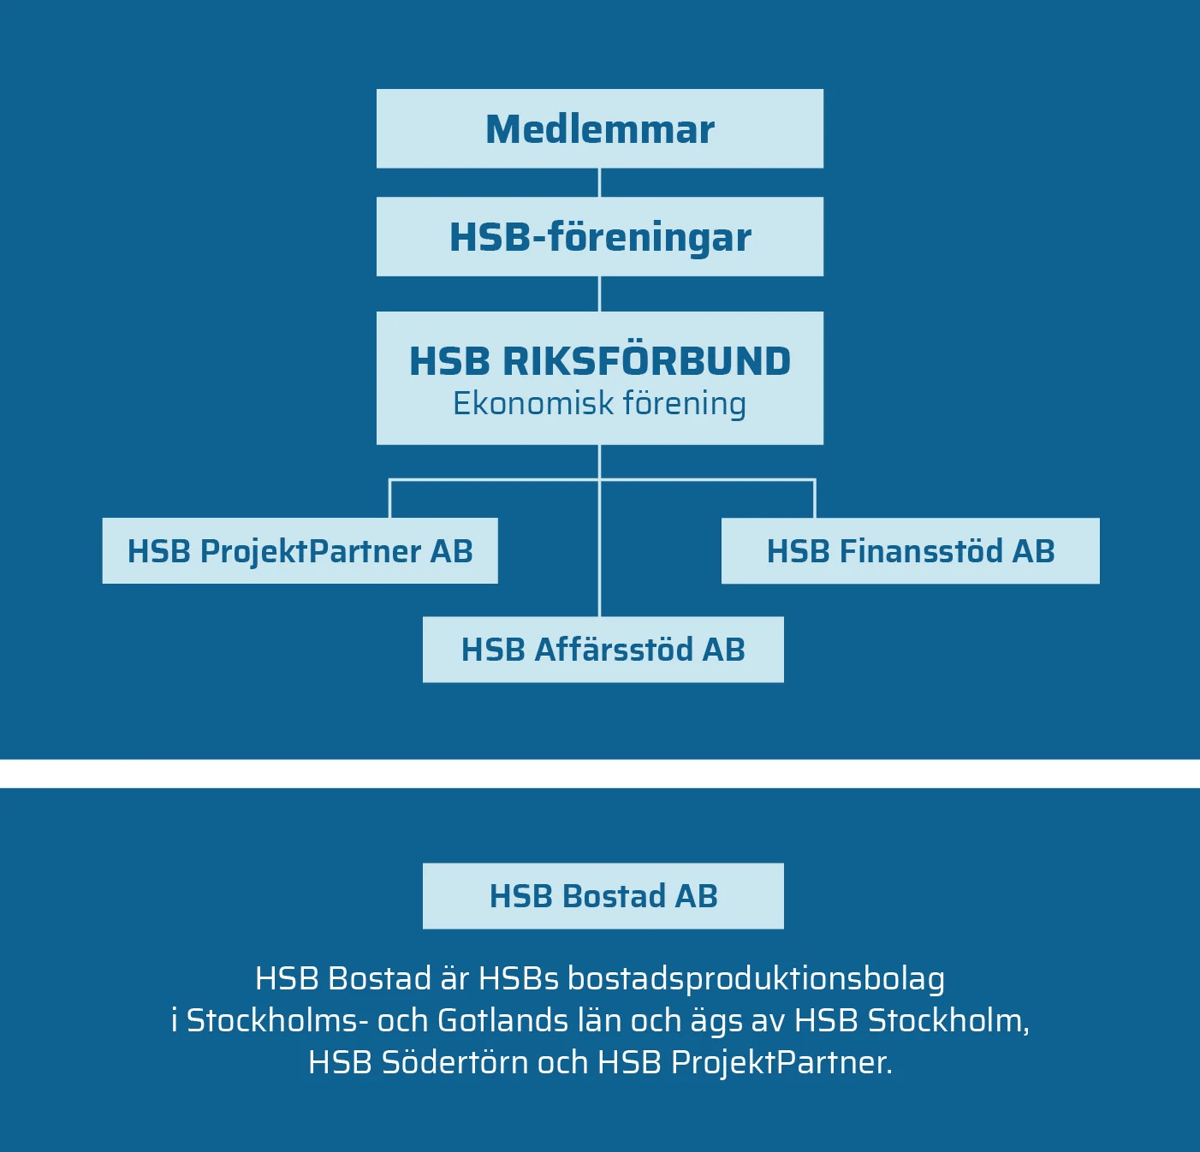 hsb_organisation_teamtailor.jpg